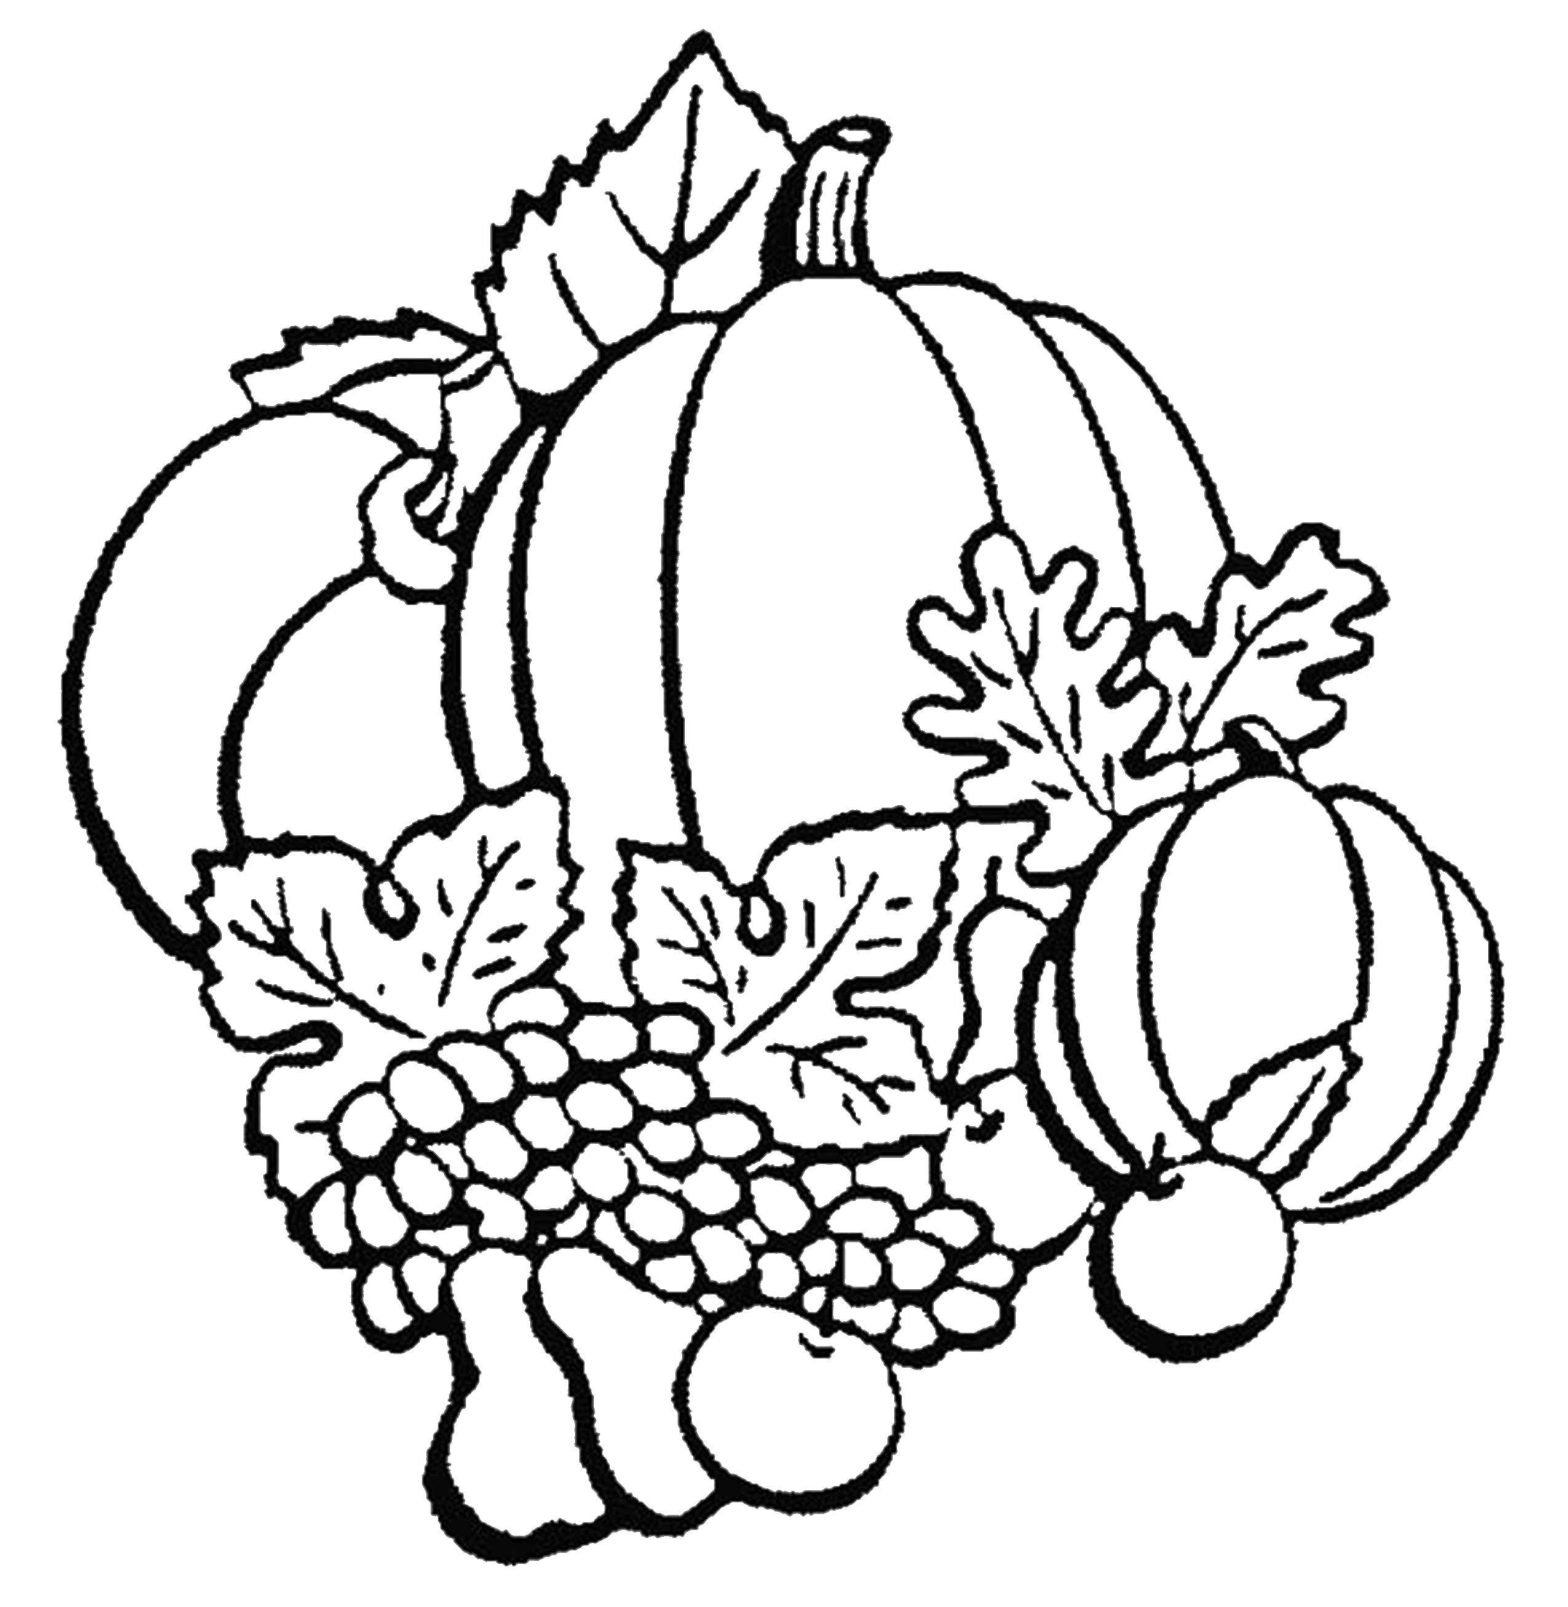 Раскраски на тему осеннего урожая, тыкв, винограда и яблок (осень, виноград, яблоки)